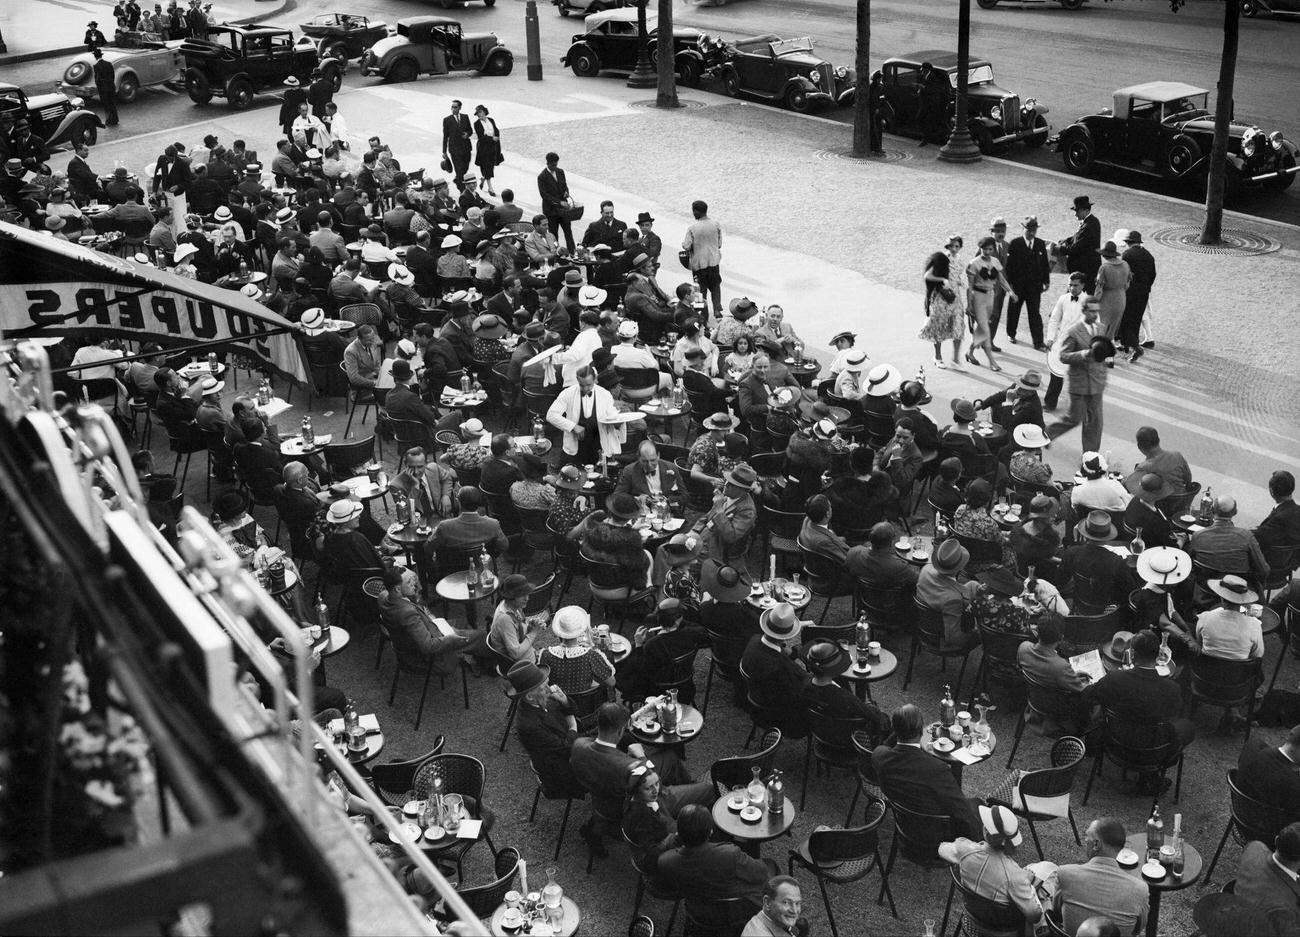 Cafe Terrace, Champs-Elysees, Paris, 1935